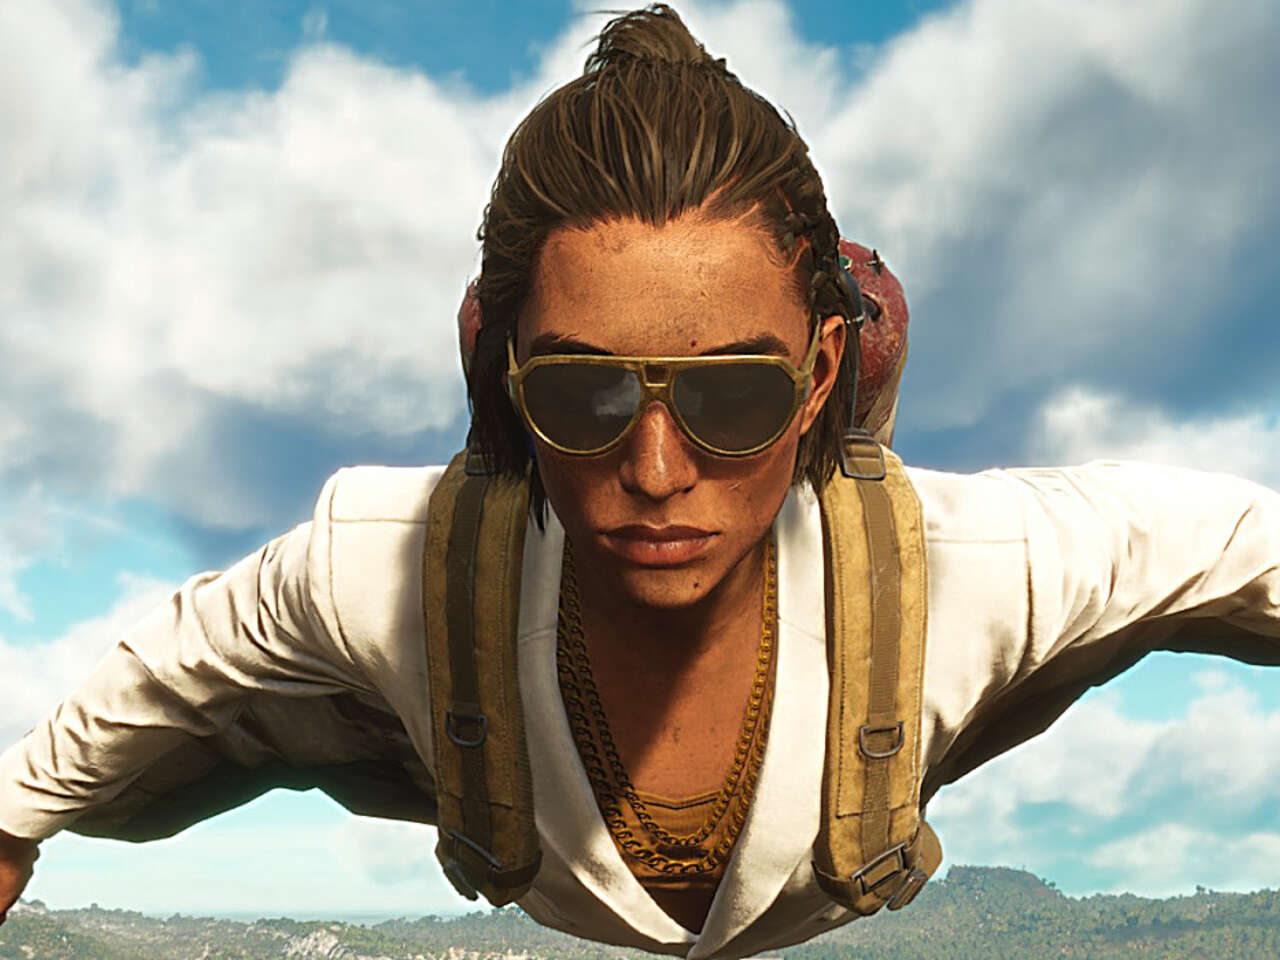 Far сайт. Костюм крыло far Cry 6. Far Cry 3 костюм крыло. Far Cry 6 вингсьют. Фар край 6 как летать на костюме крыле.